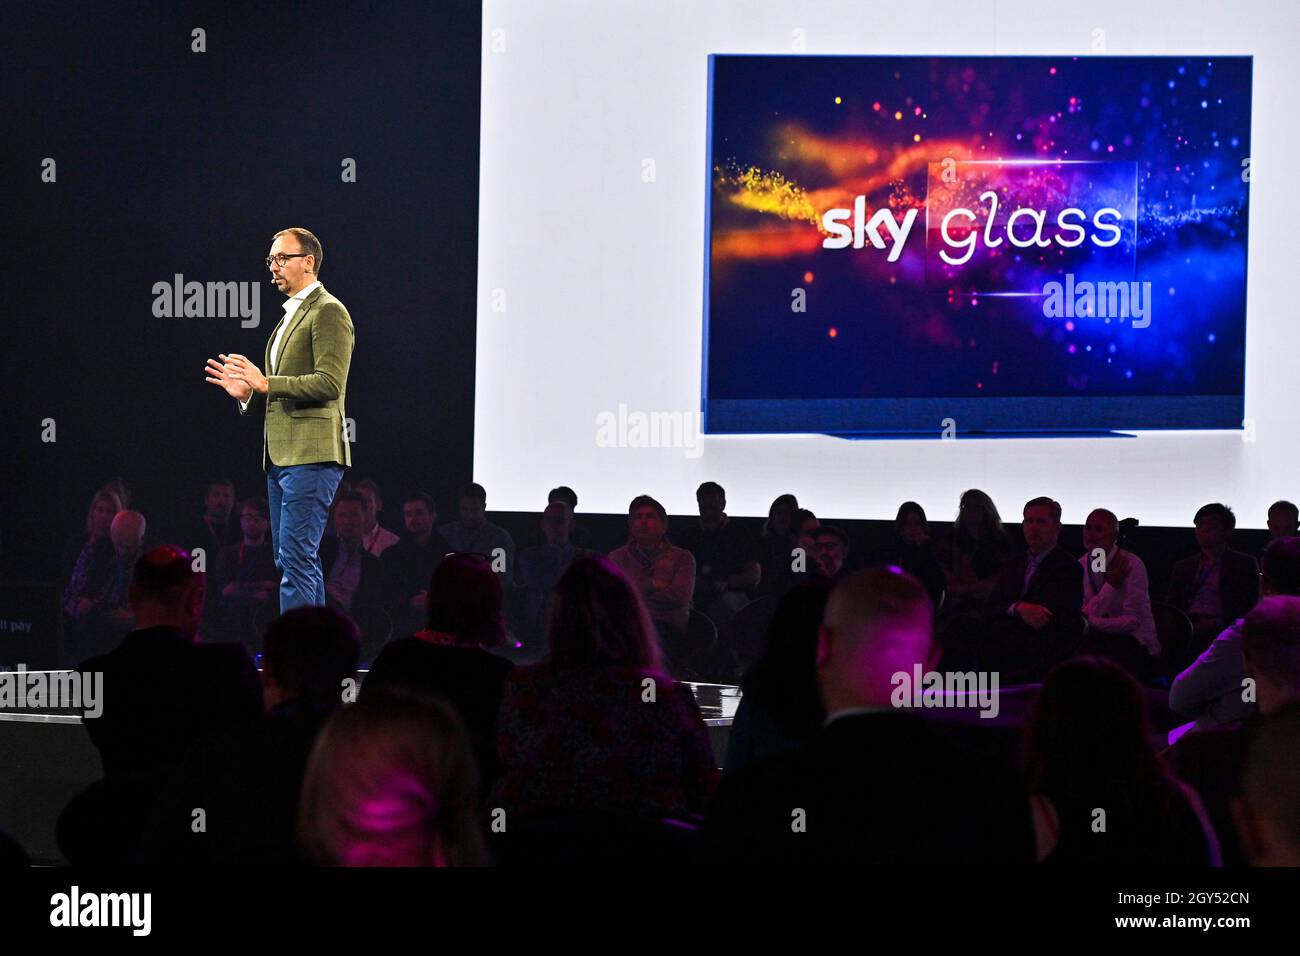 SOLO PER USO EDITORIALE EVP e CEO UK & Europe, Stephen Van Rooyen parla a Londra al lancio ufficiale di Sky Glass, la nuova televisione in streaming di Sky con i suoi servizi integrati, disponibile per l'acquisto nel Regno Unito da lunedì 18 ottobre. Data foto: Giovedì 6 ottobre 2021. Foto Stock